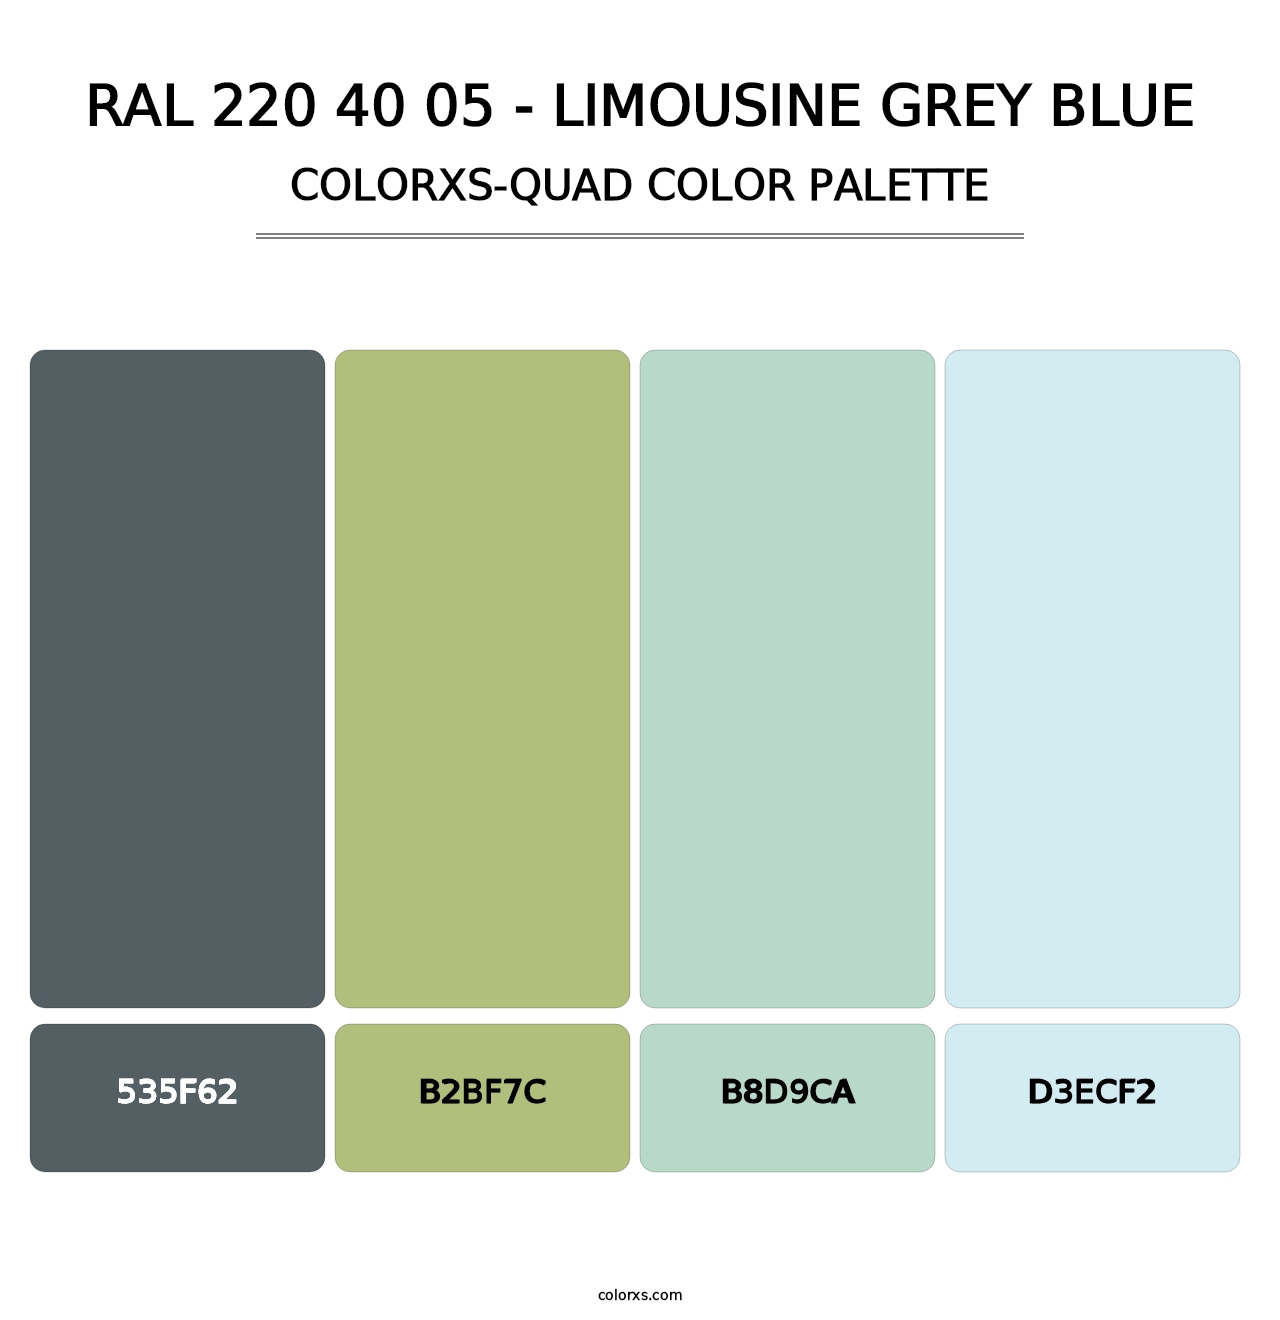 RAL 220 40 05 - Limousine Grey Blue - Colorxs Quad Palette